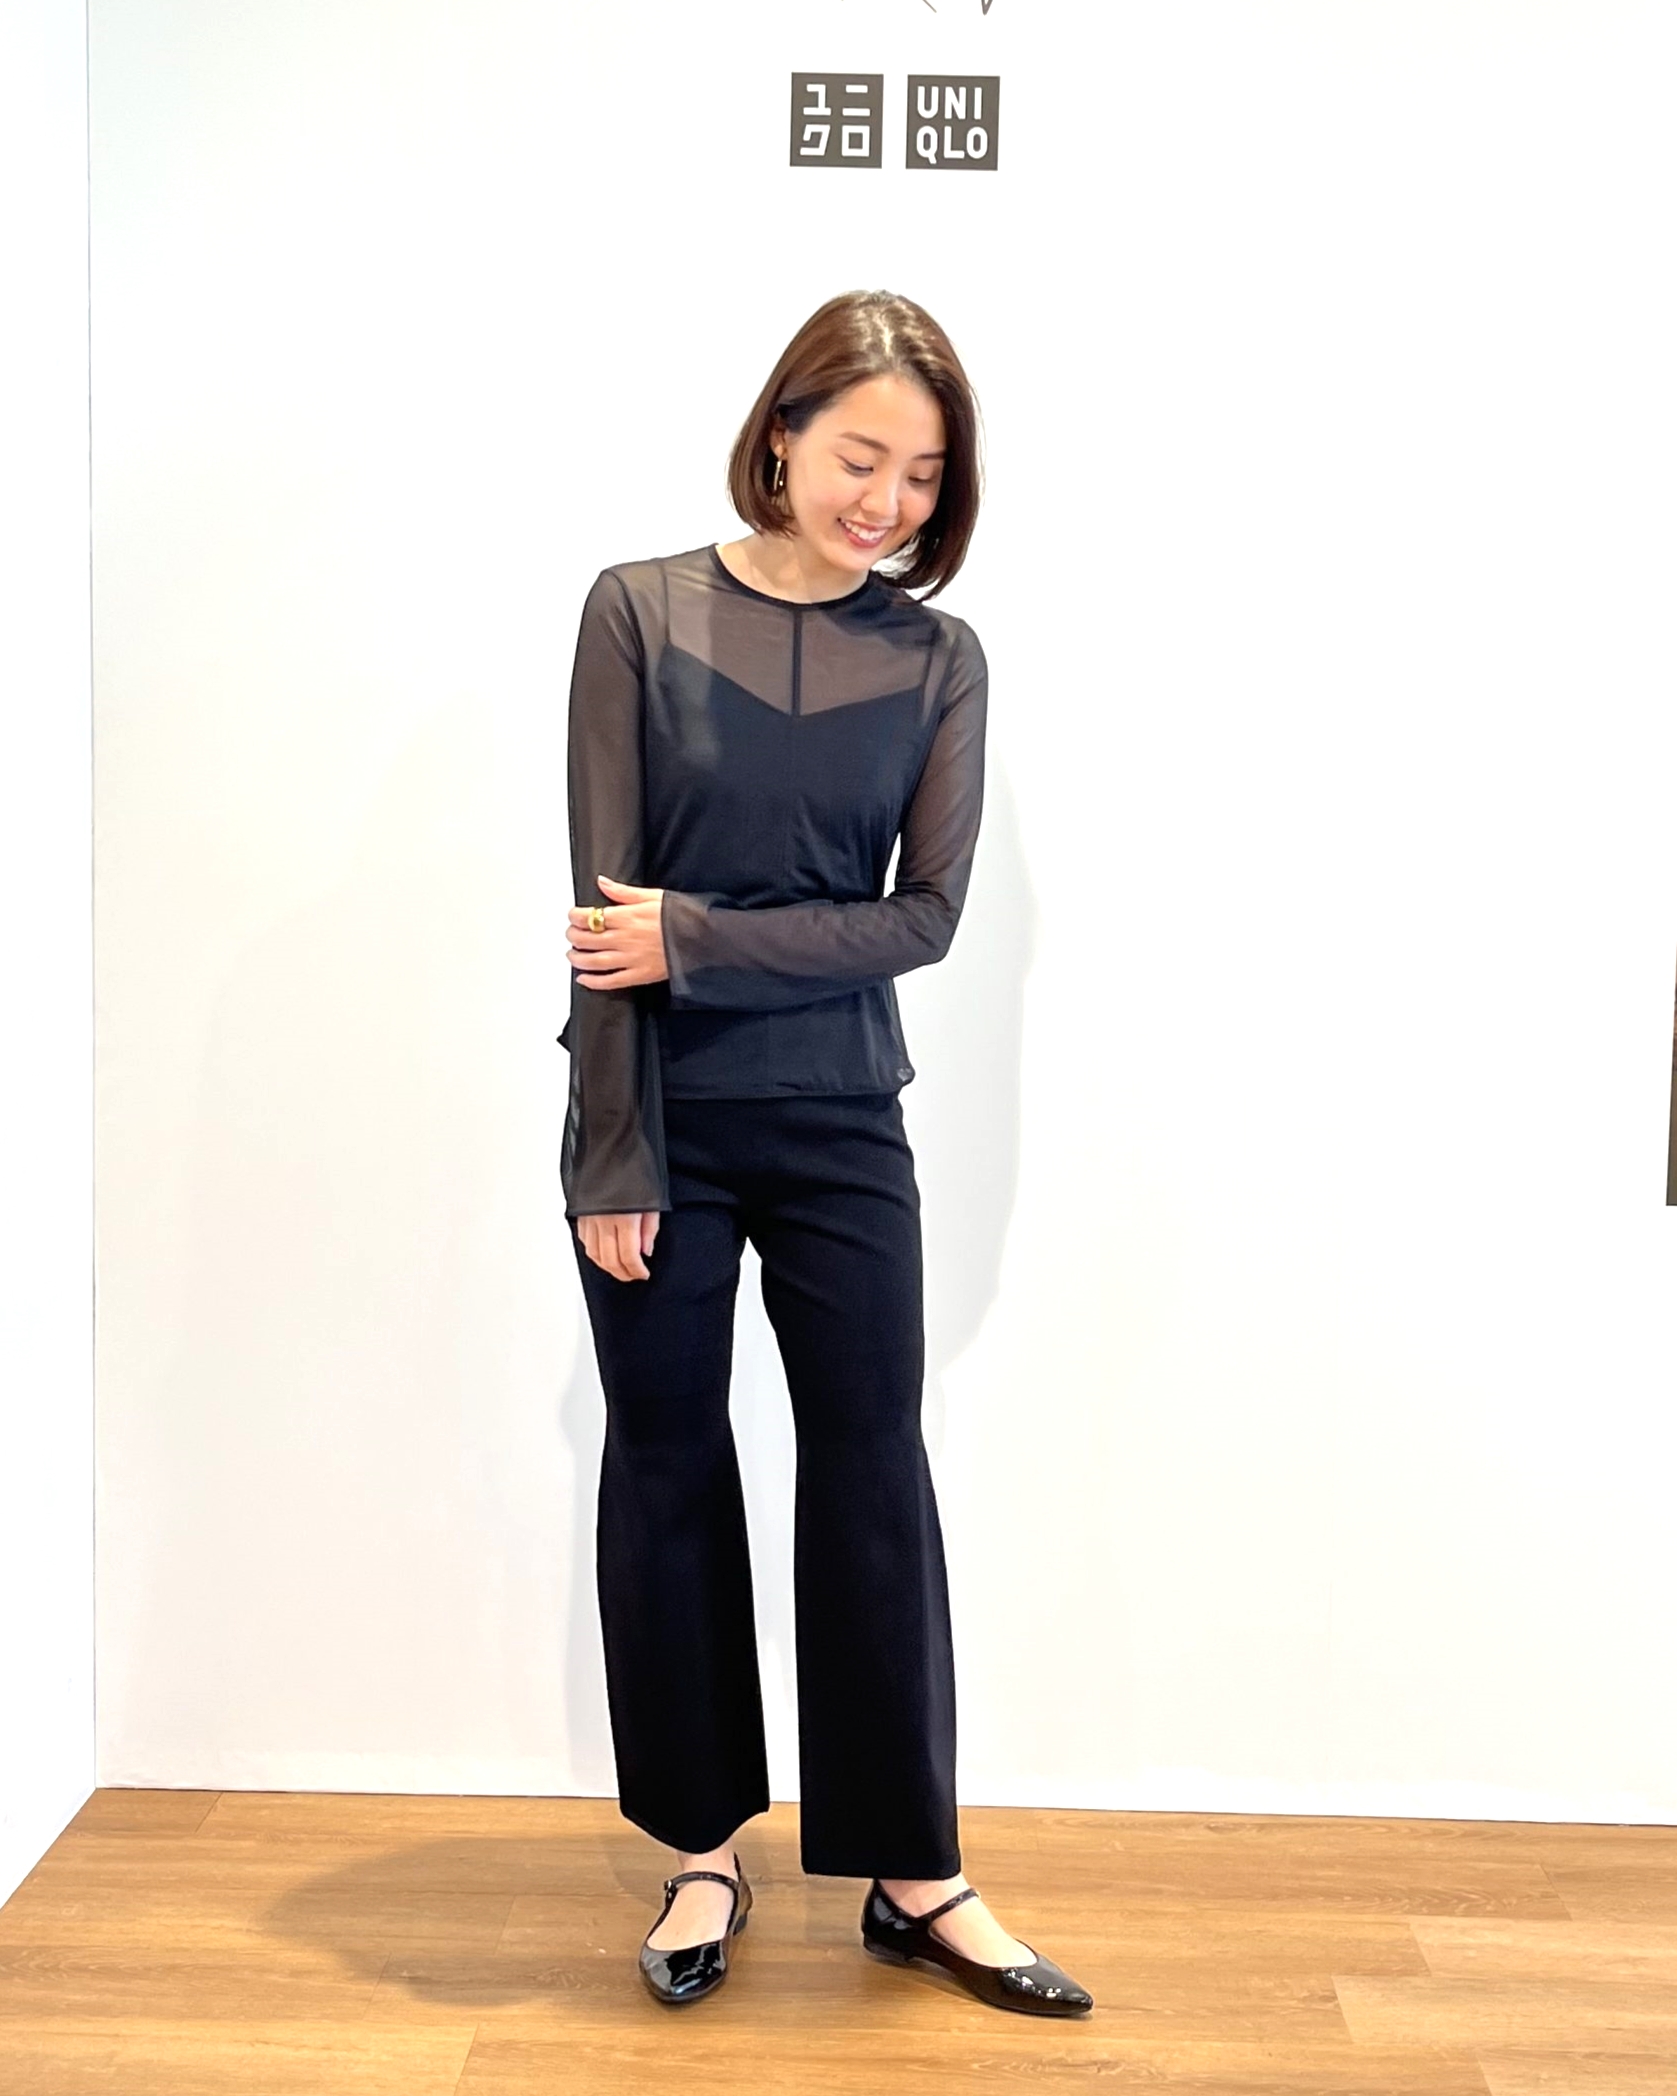 ユニクロ×マメクロゴウチ（UNIQLO and Mame Kurogouchi）のシアークルーネックTシャツ×３D セミフレアパンツのオススメコーデ。